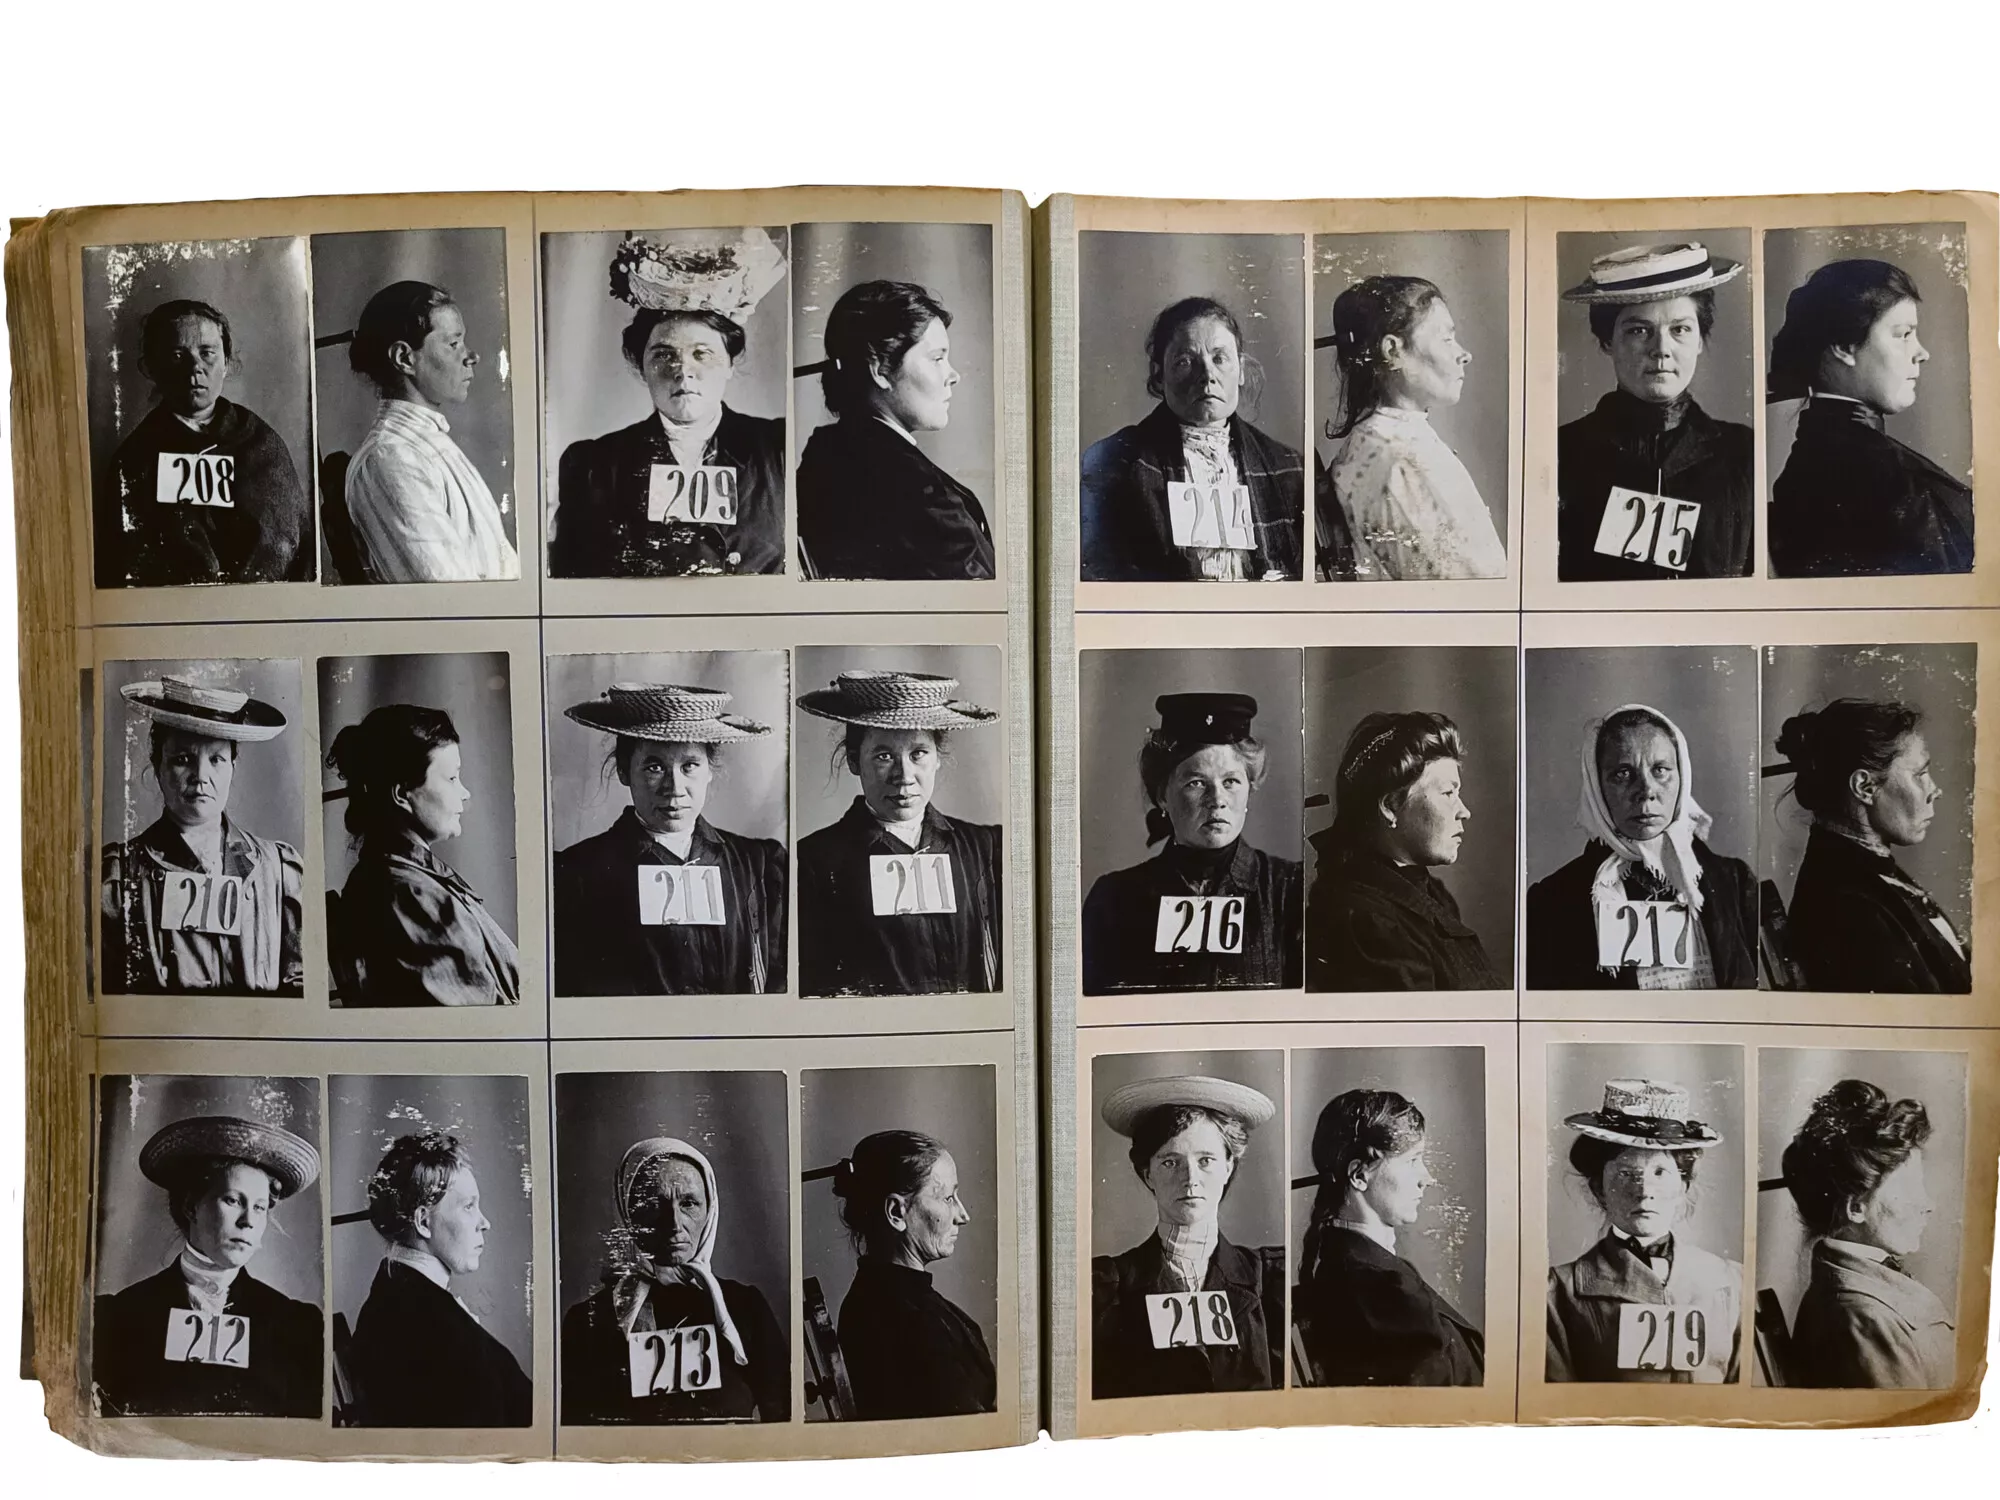 Poliisin rekistereihin päätyneiden naisten valokuvat kätkivät monenlaisia ihmiskohtaloita.